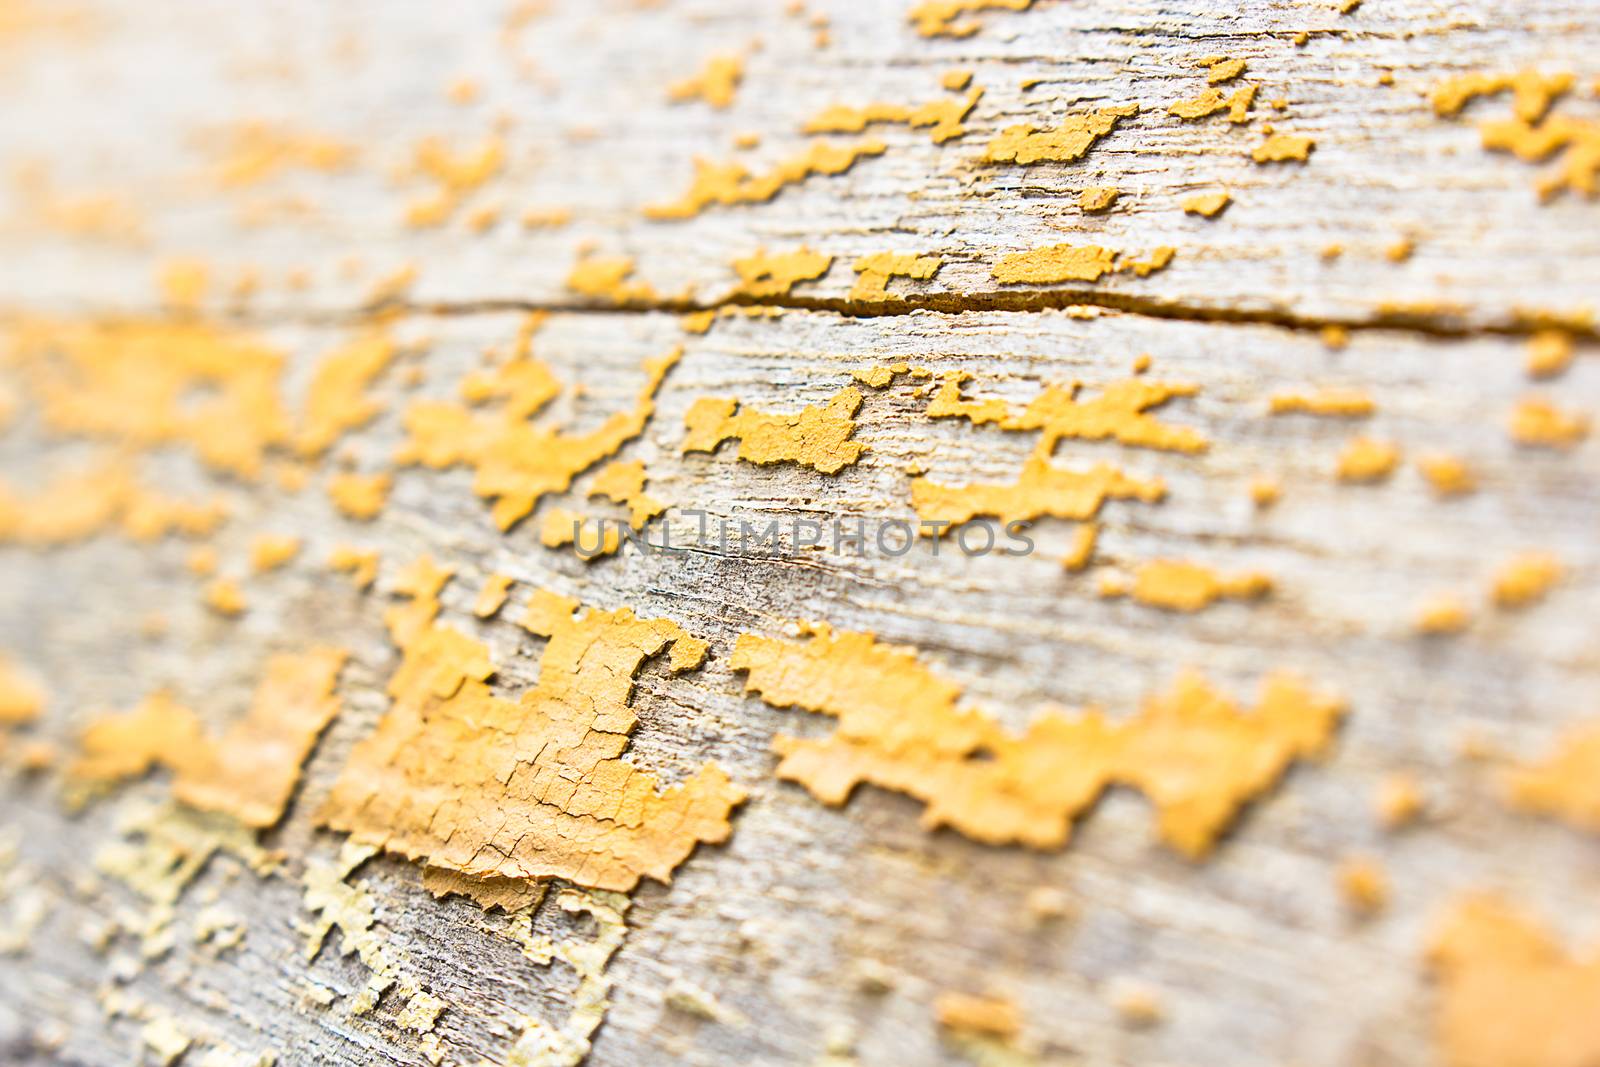 wood texture by narinbg